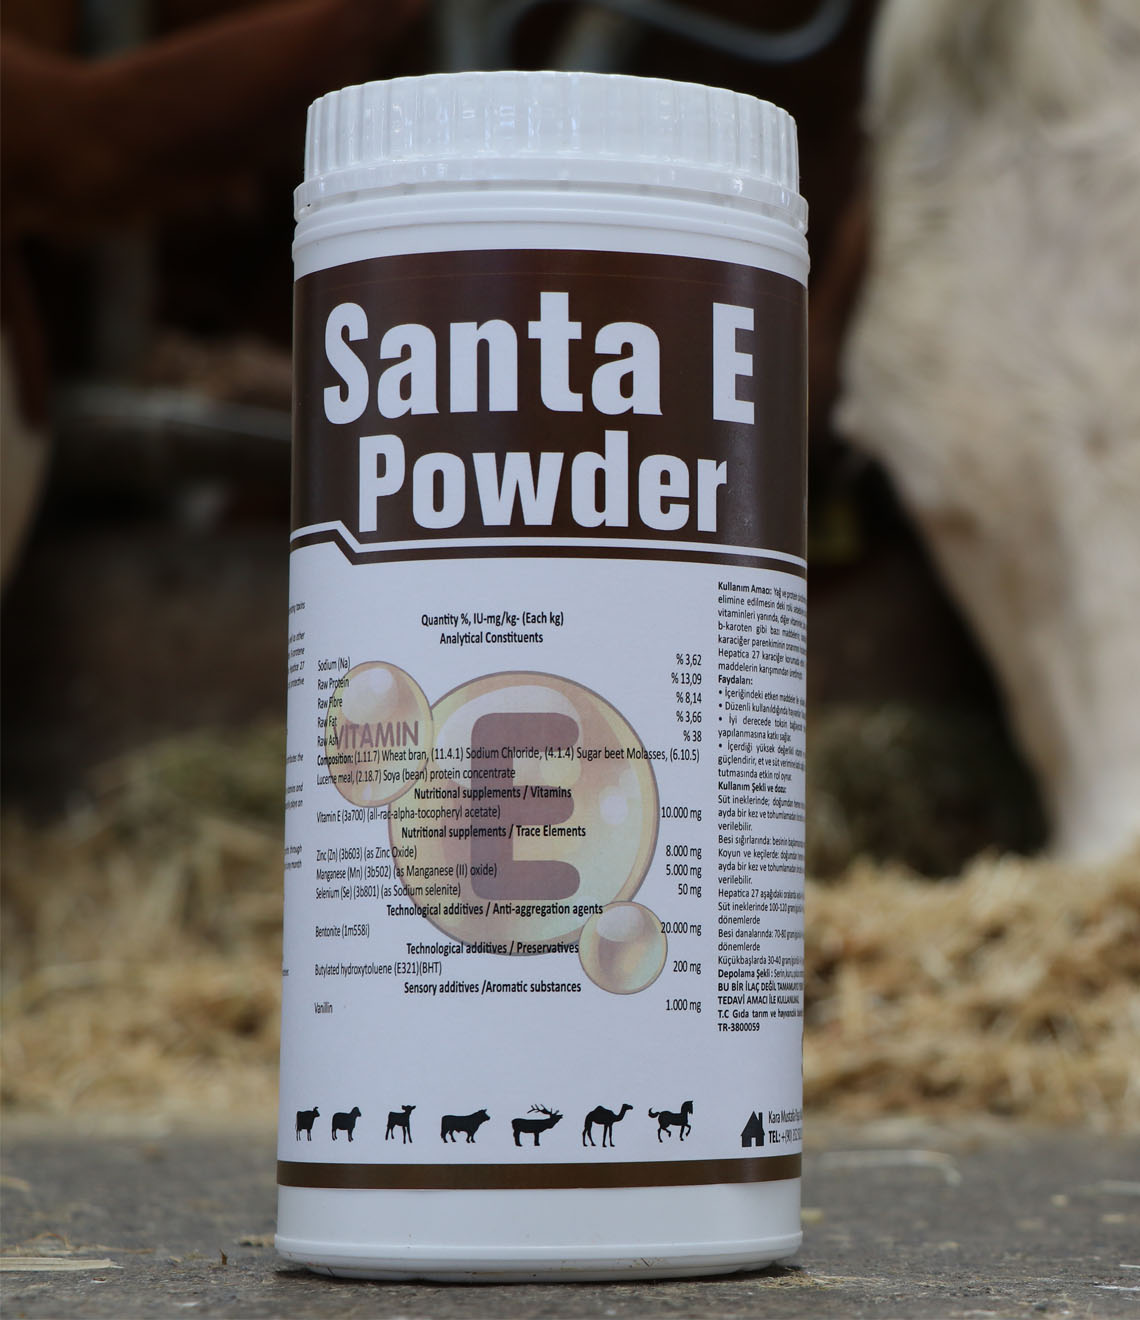 Santa E Powder